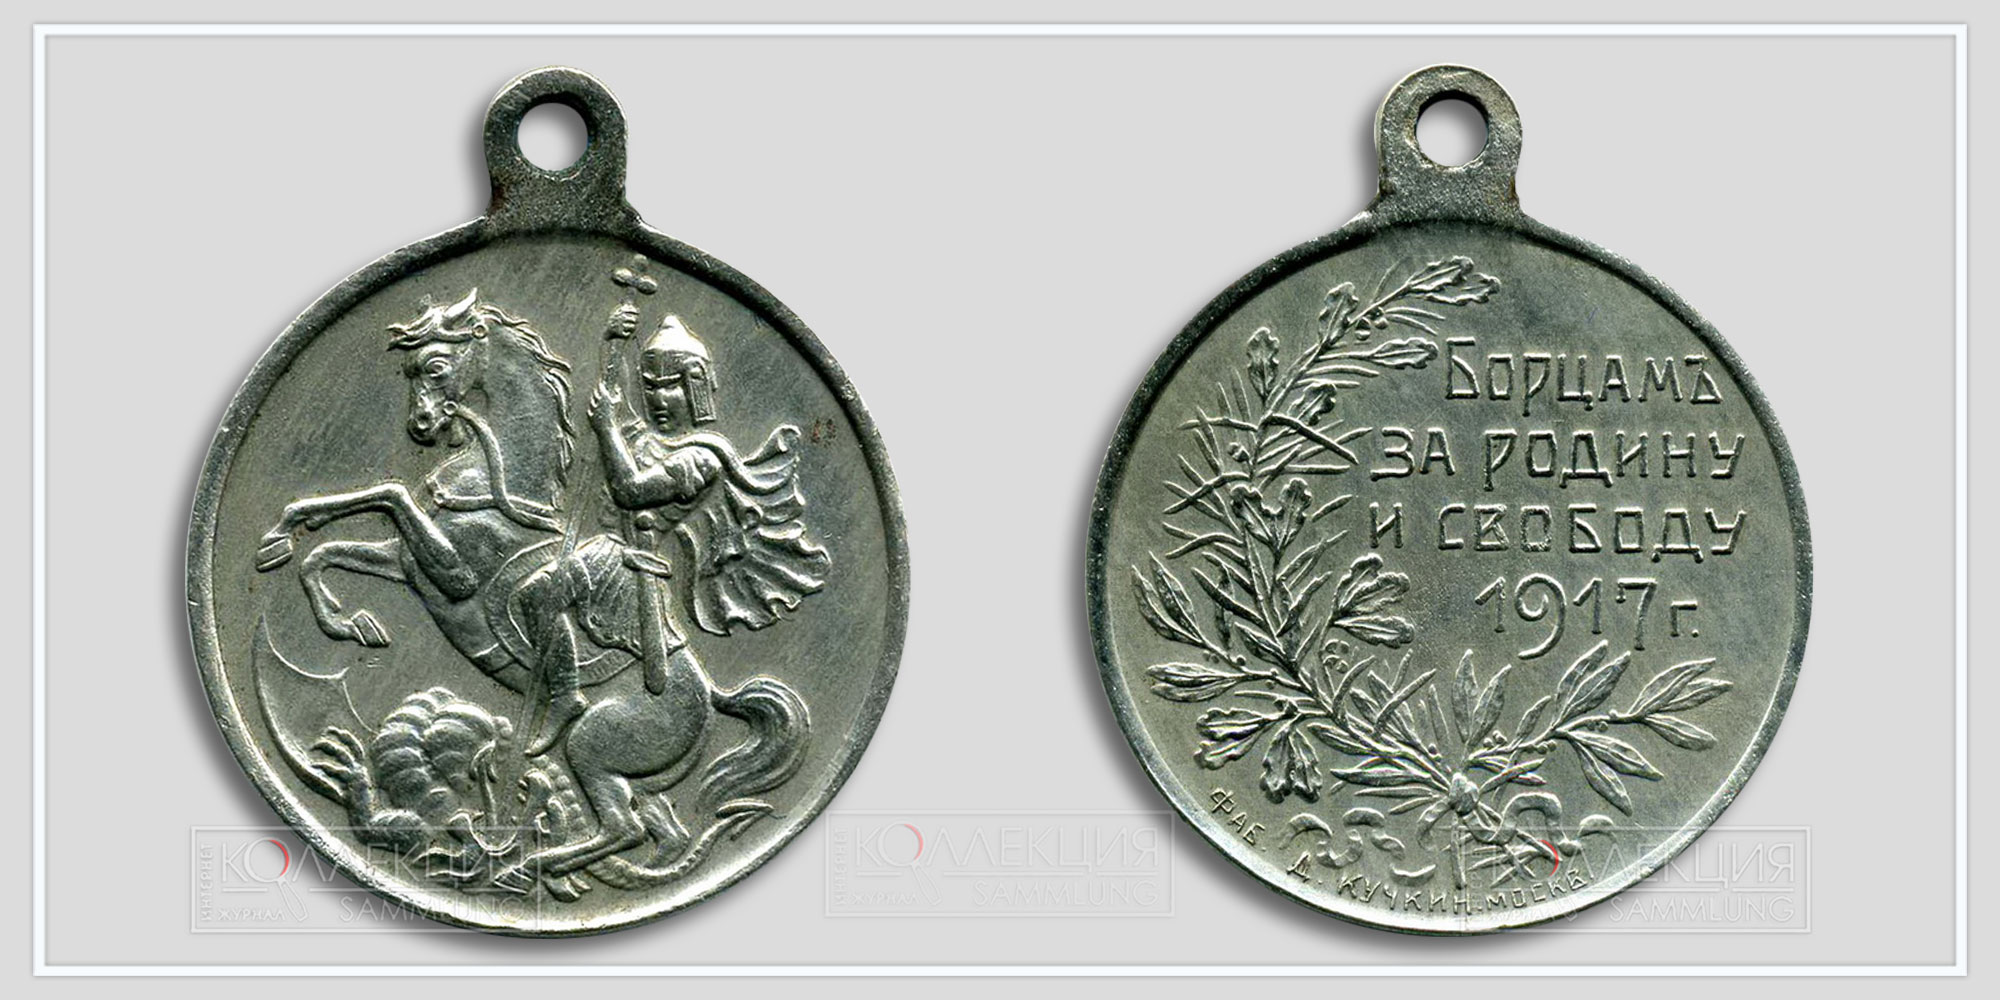 Медаль (жетон) "Борцам за Родину и свободу" Временное правительство